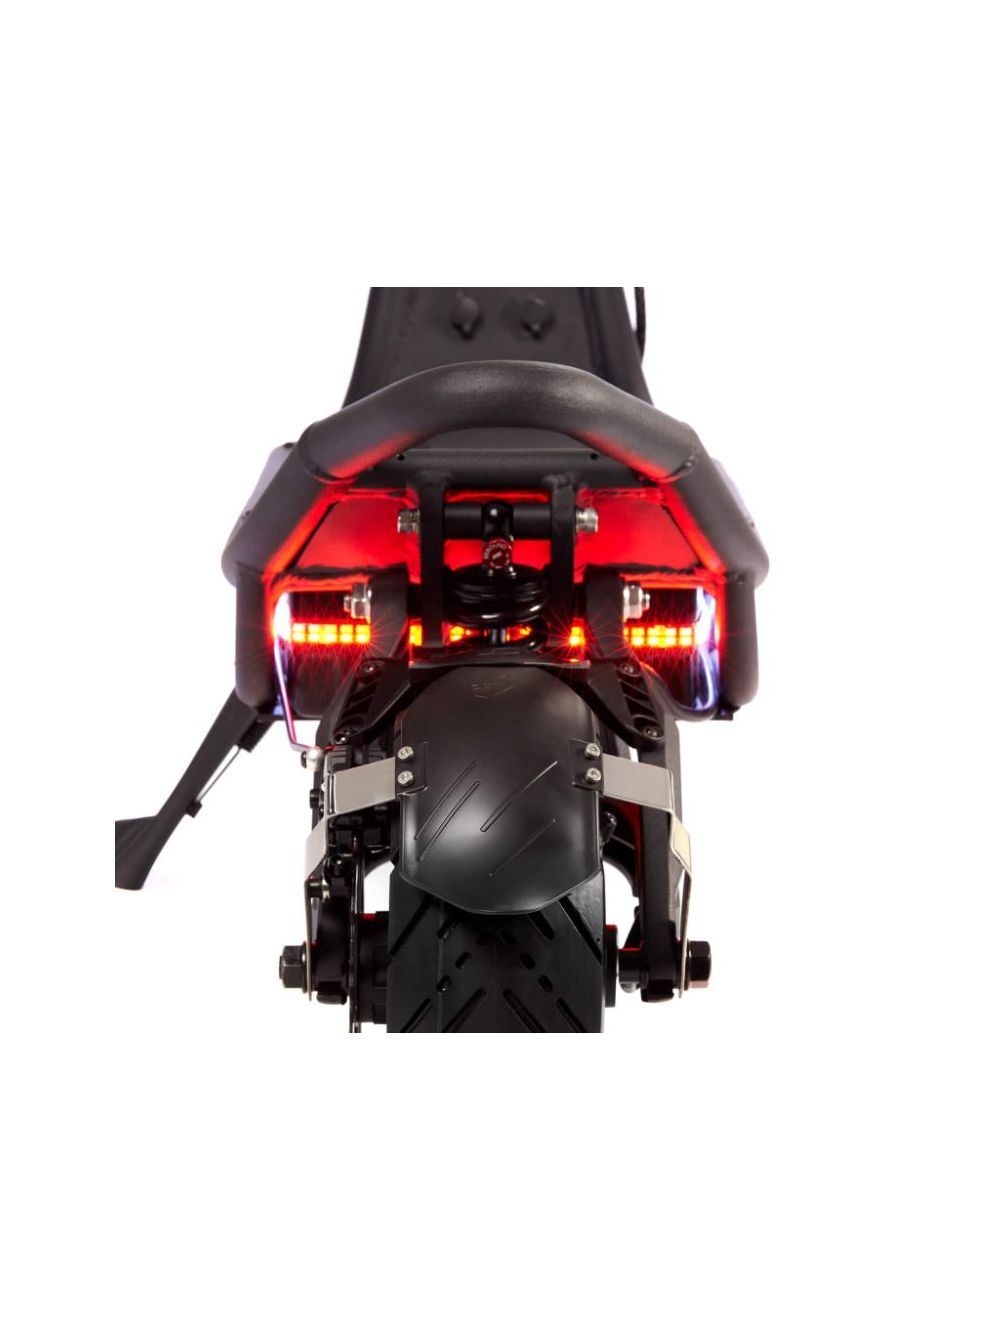 Nami burn-e 3 MAX 40Ah 2023 Neueste Version mit der 4-Kolben vollhydraulischen Scheibenbremse und weiteren Verbesserungen (angepasste Led-Streifen, Motorkabelstecker für einfachere Demontage) Geschwindigkeit: 100 km/h Reichweite: 160 km